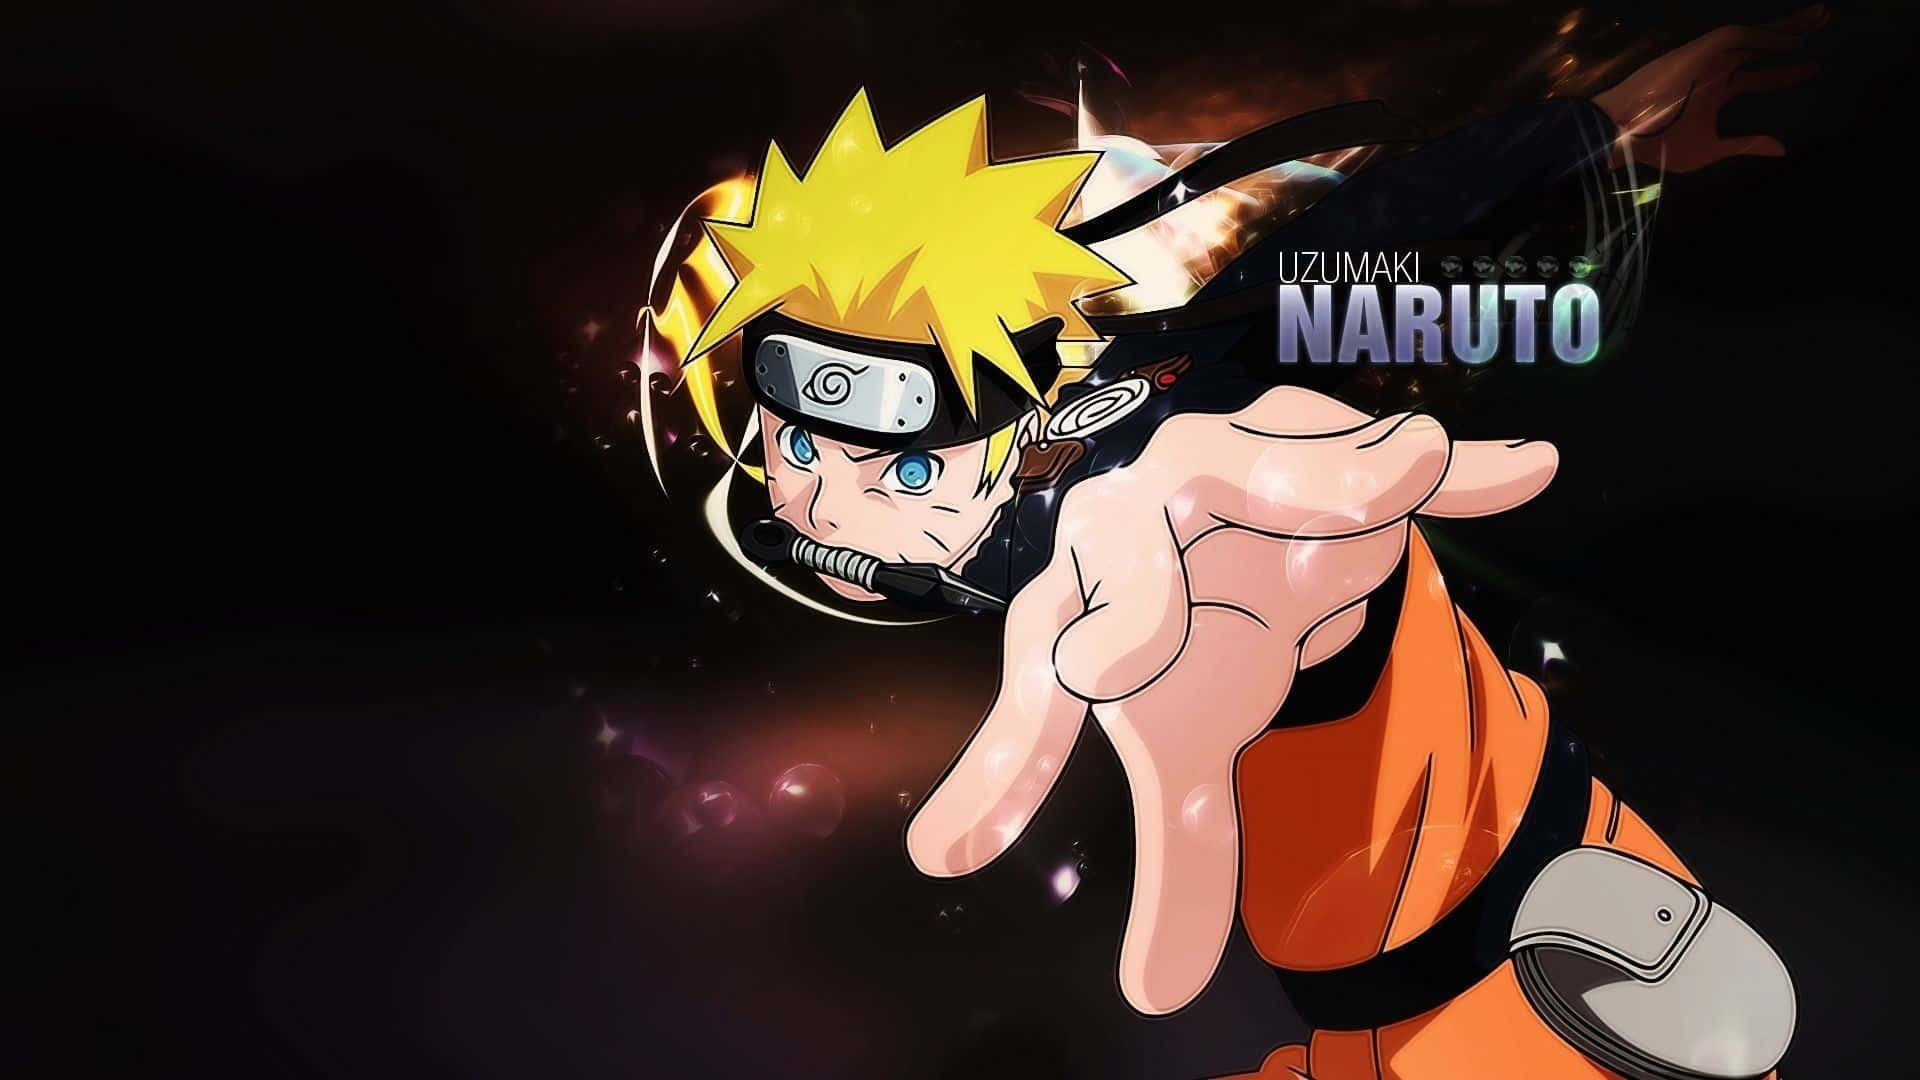 Seguii Tuoi Sogni: Naruto Nero